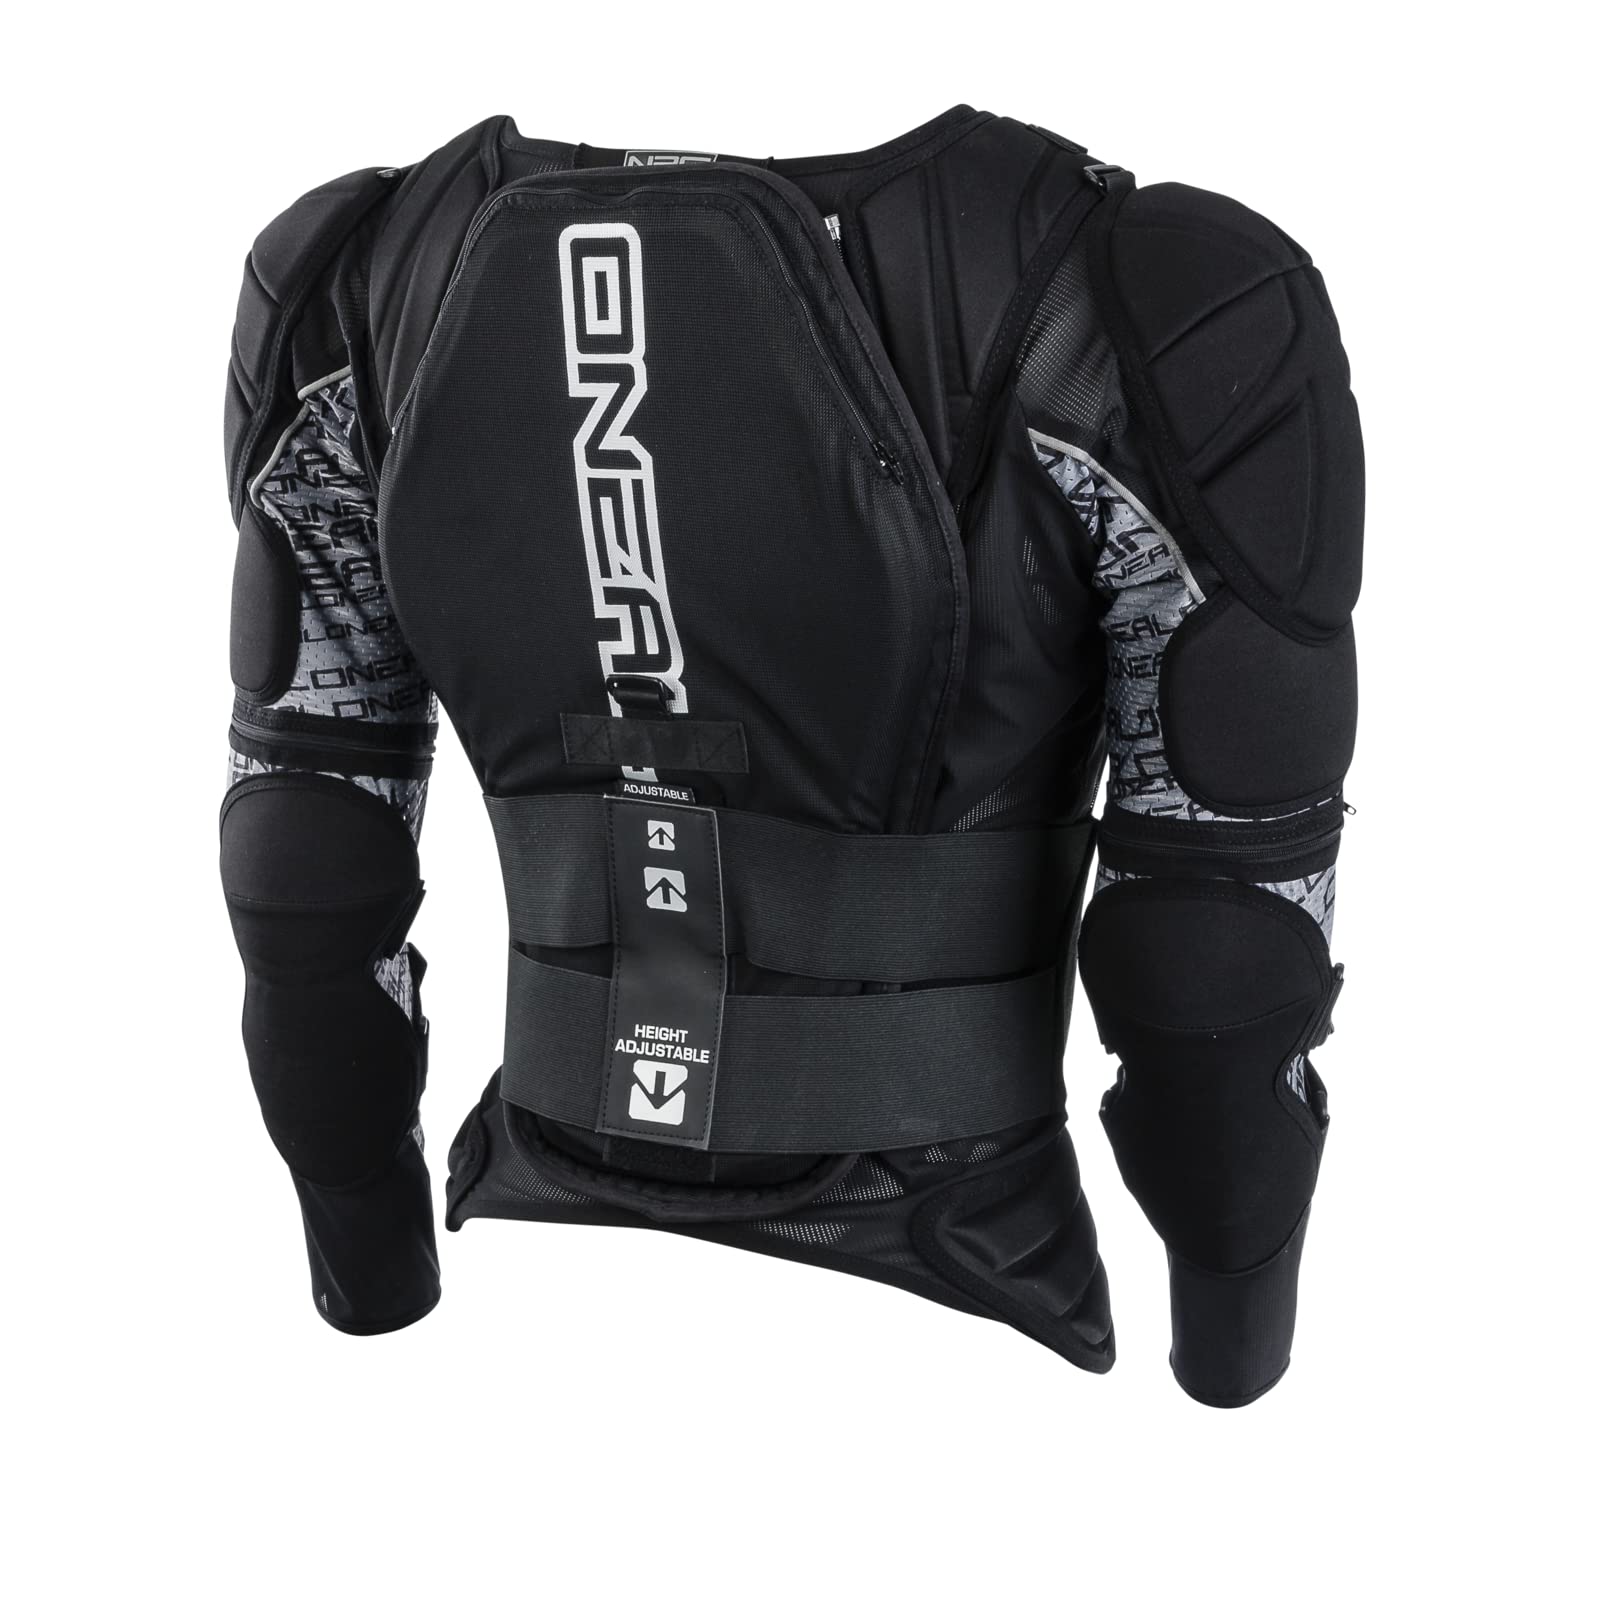 O'NEAL | Protektoren-Jacke | Motocross Enduro | Rückenprotektor mit IPX® Schaum, elastischer Nierengurt, Umfangreiche Mesh-Belüftung | MADASS Moveo Protector Jacke | Erwachsene | Schwarz | Größe S von O'NEAL